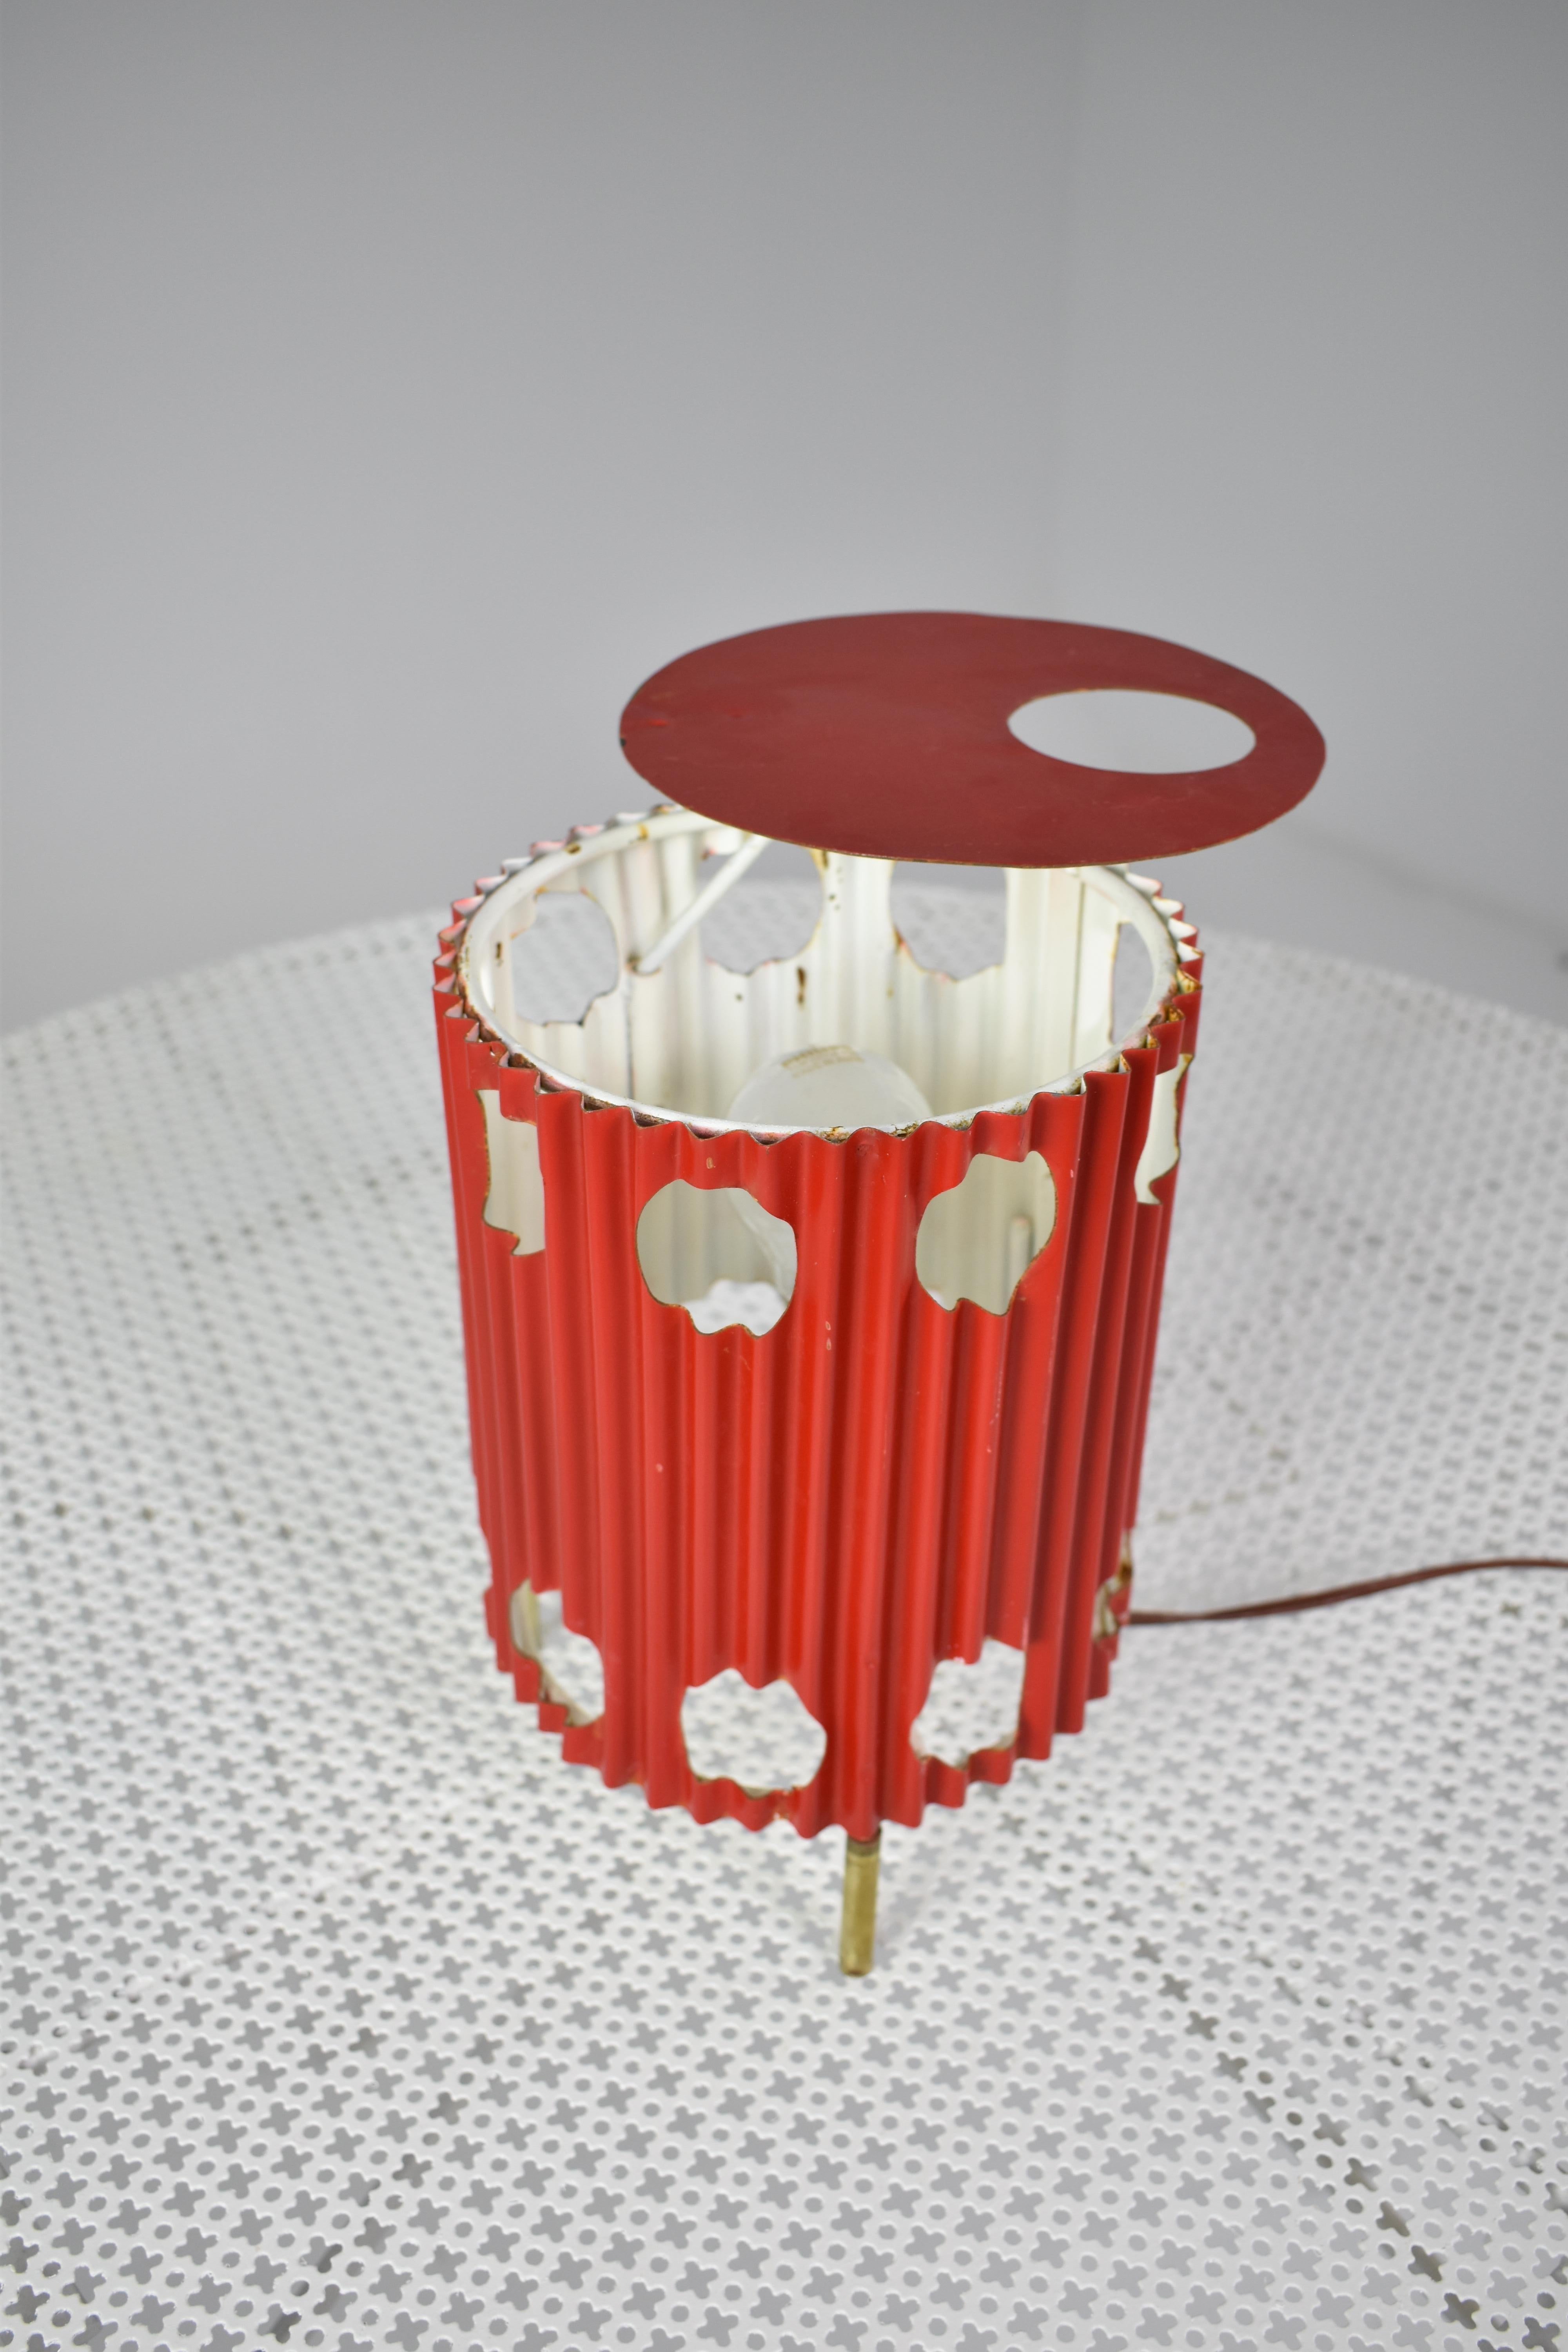 Die rote Java-Lampe von 1953, die sich unter den Sammlern großer Beliebtheit erfreut, verkörpert die künstlerische Innovation von Mathieu Matégot. Sie besteht aus plissiertem und perforiertem, lackiertem Blech auf eleganten dreibeinigen